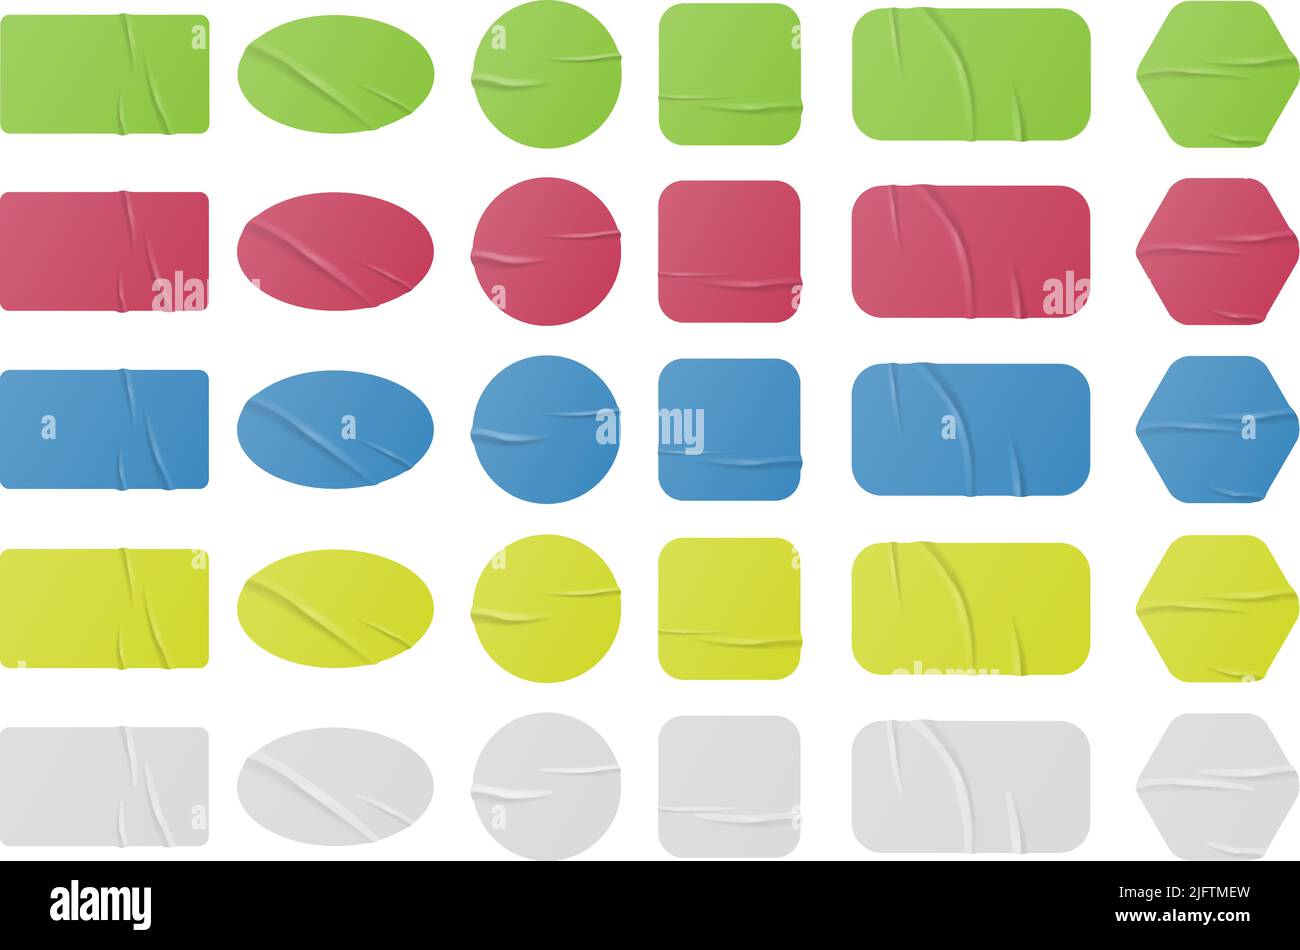 jeu d'autocollants froissés et ondulés de différentes couleurs isolés sur fond blanc, collection de modèles d'étiquettes adhésives, illustration vectorielle Illustration de Vecteur